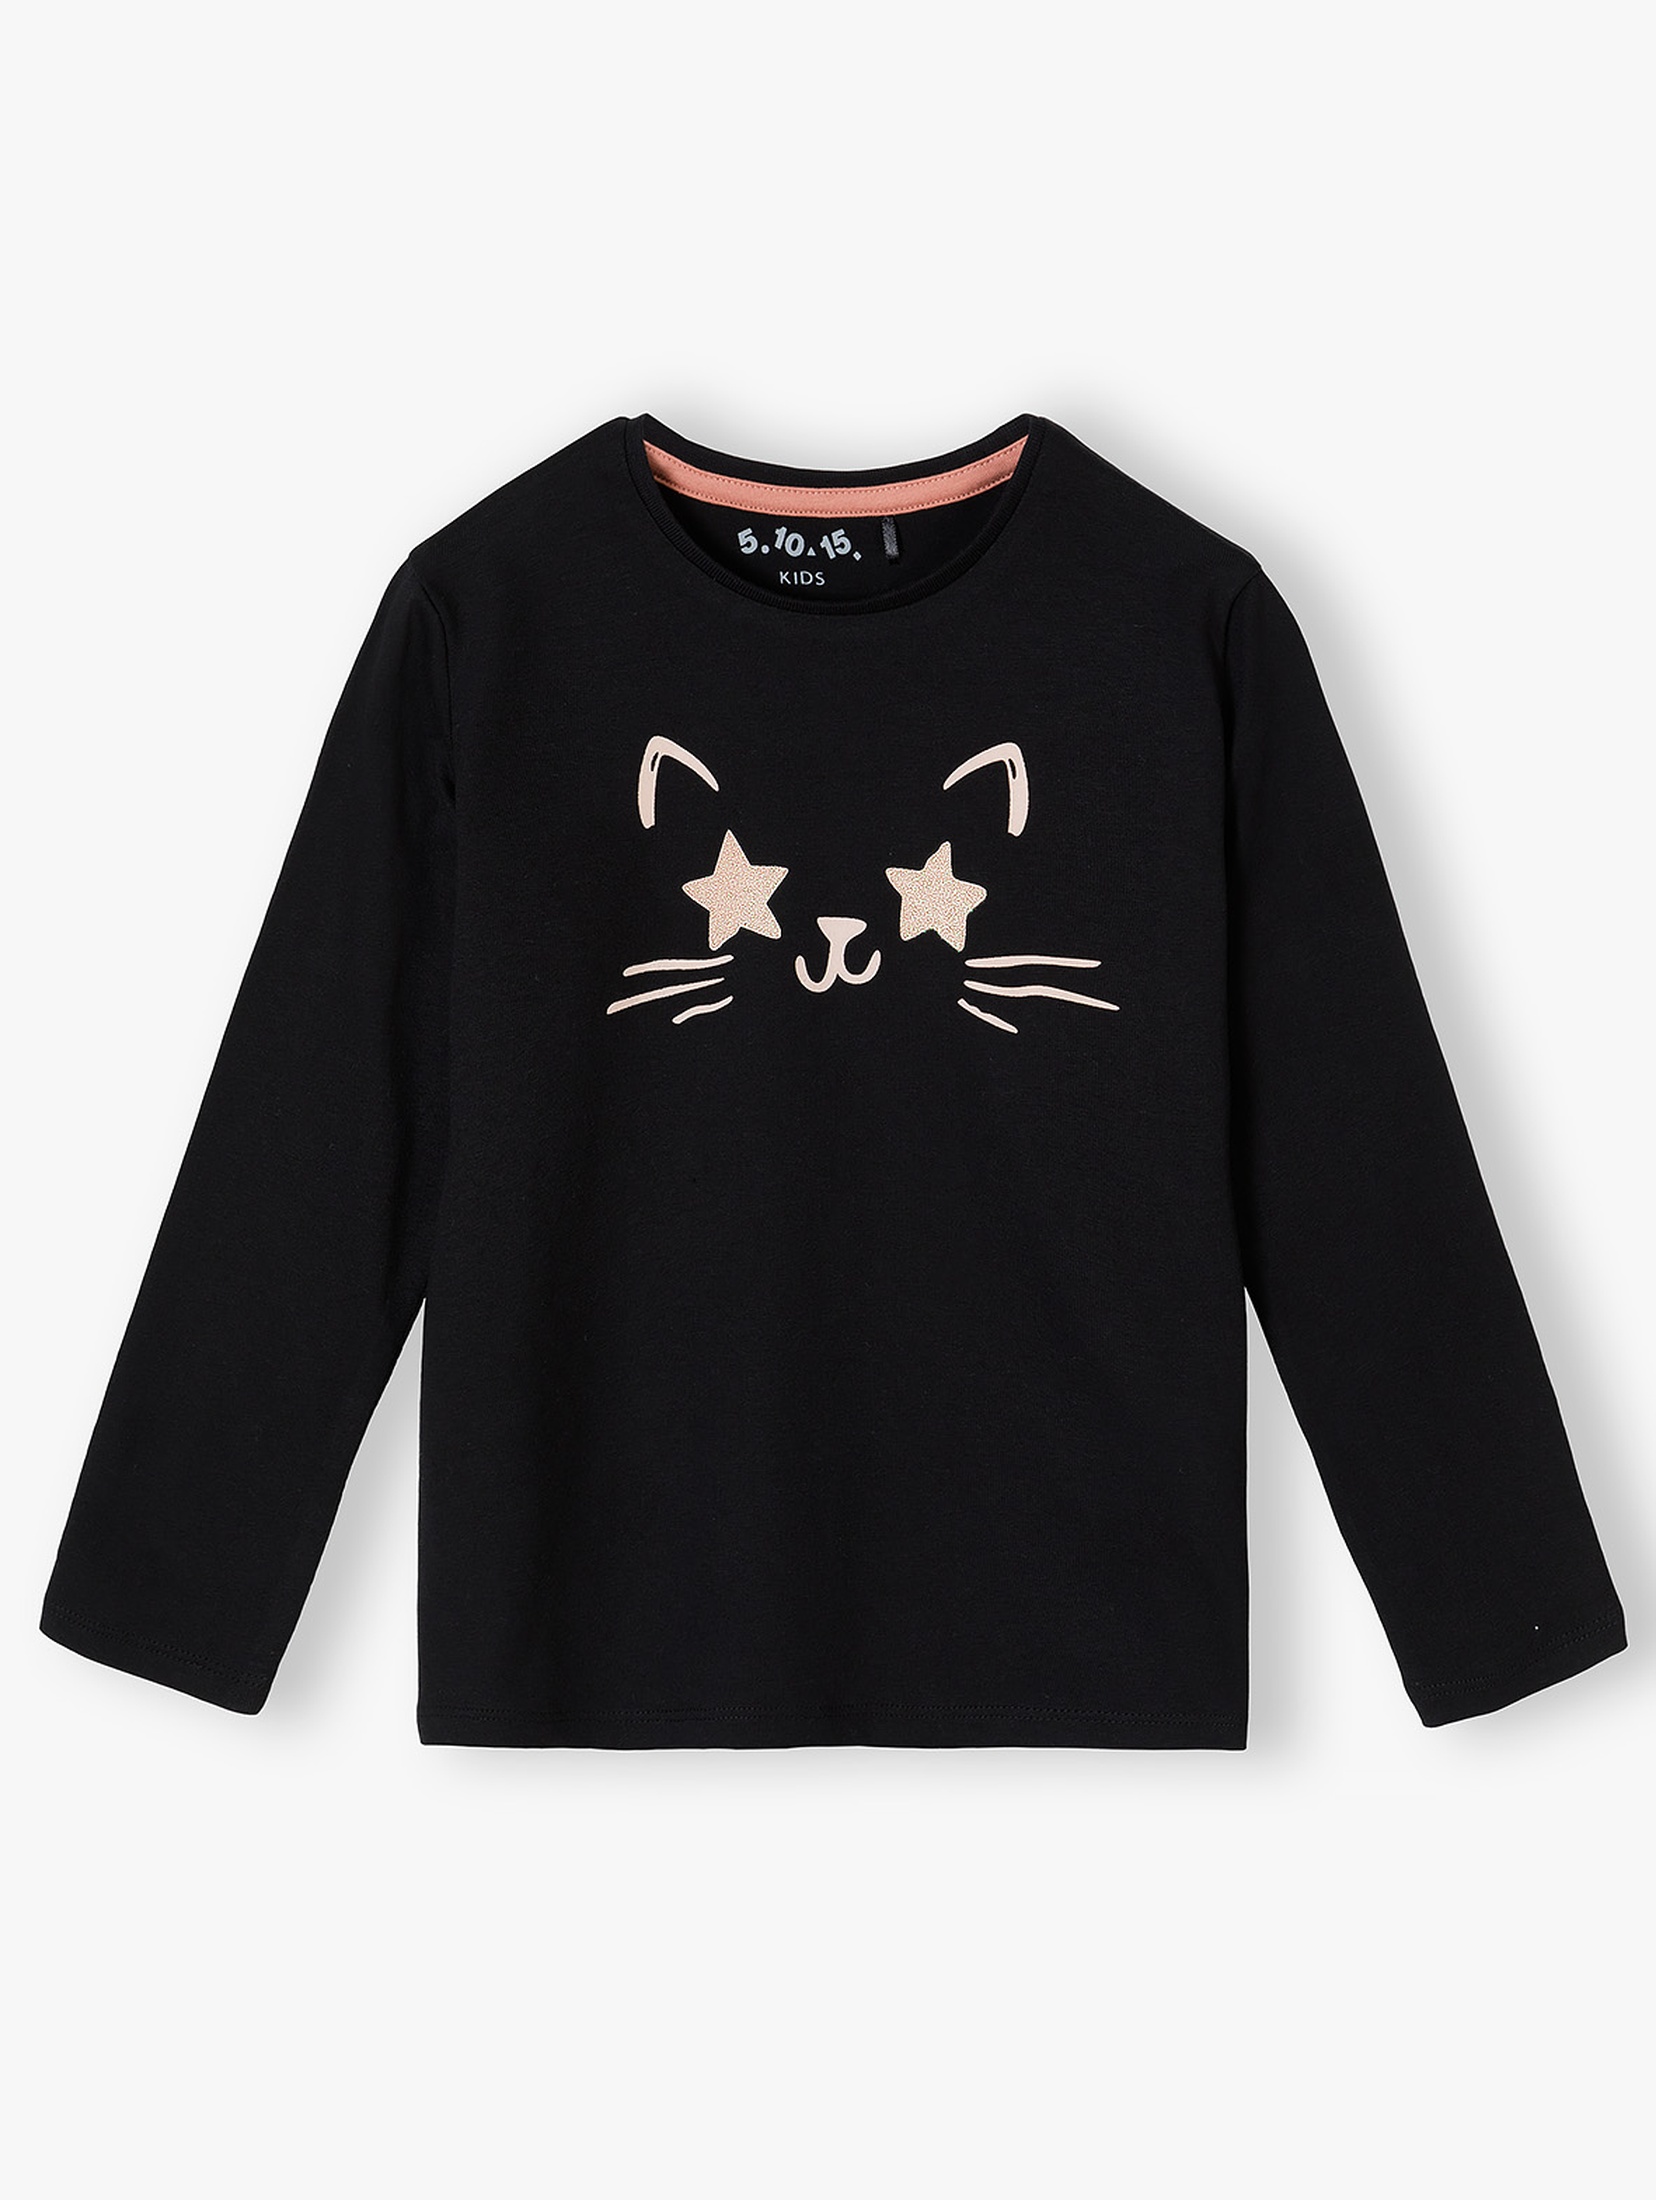 Bawełniana czarna bluzka z kotem dla dziewczynki - długi rękaw